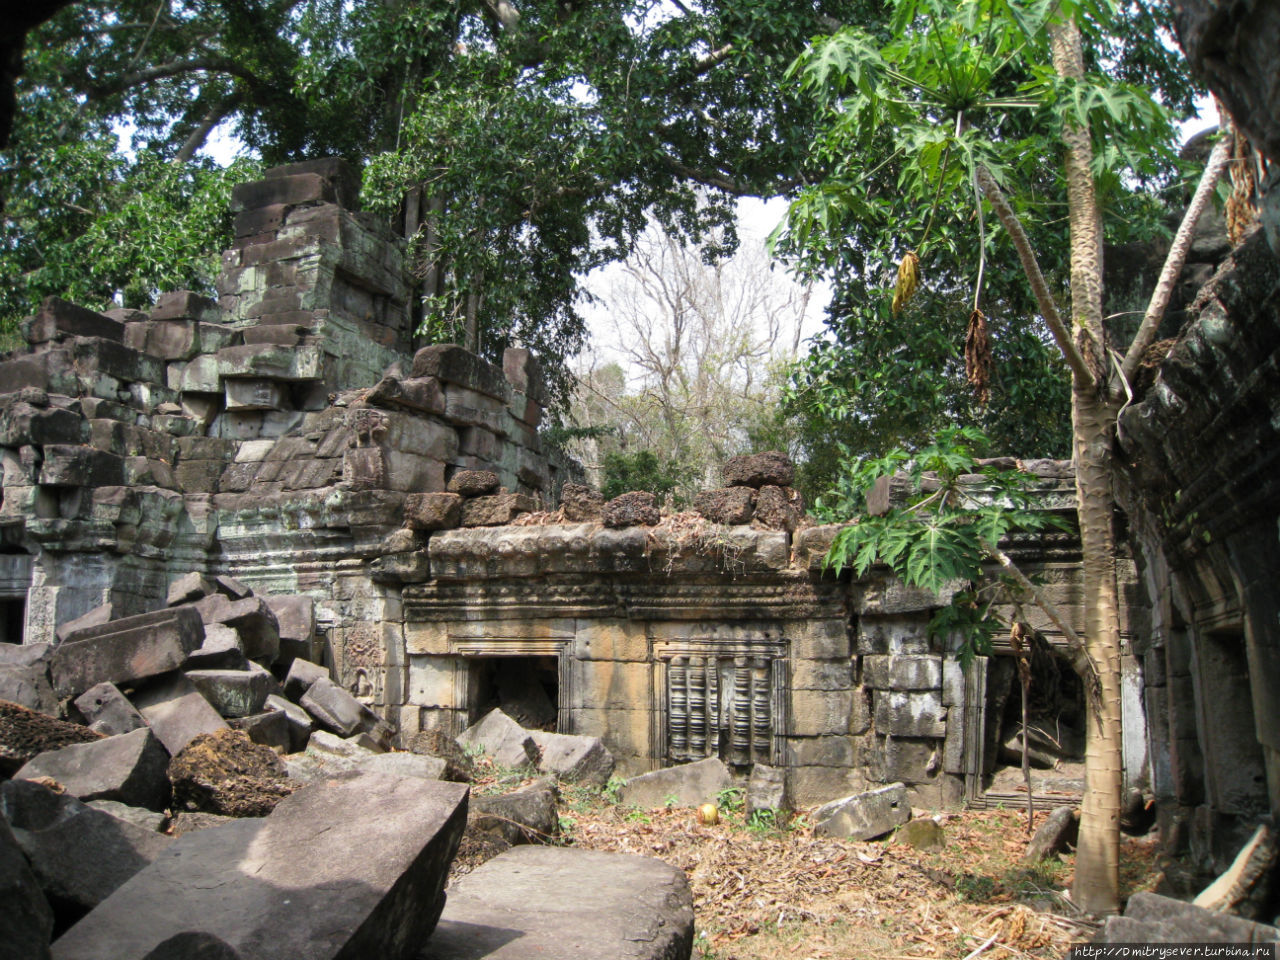 Заброшенные храмы во множестве встречаются в окрестных джунглях, стоит только сойти с тропы Ангкор (столица государства кхмеров), Камбоджа